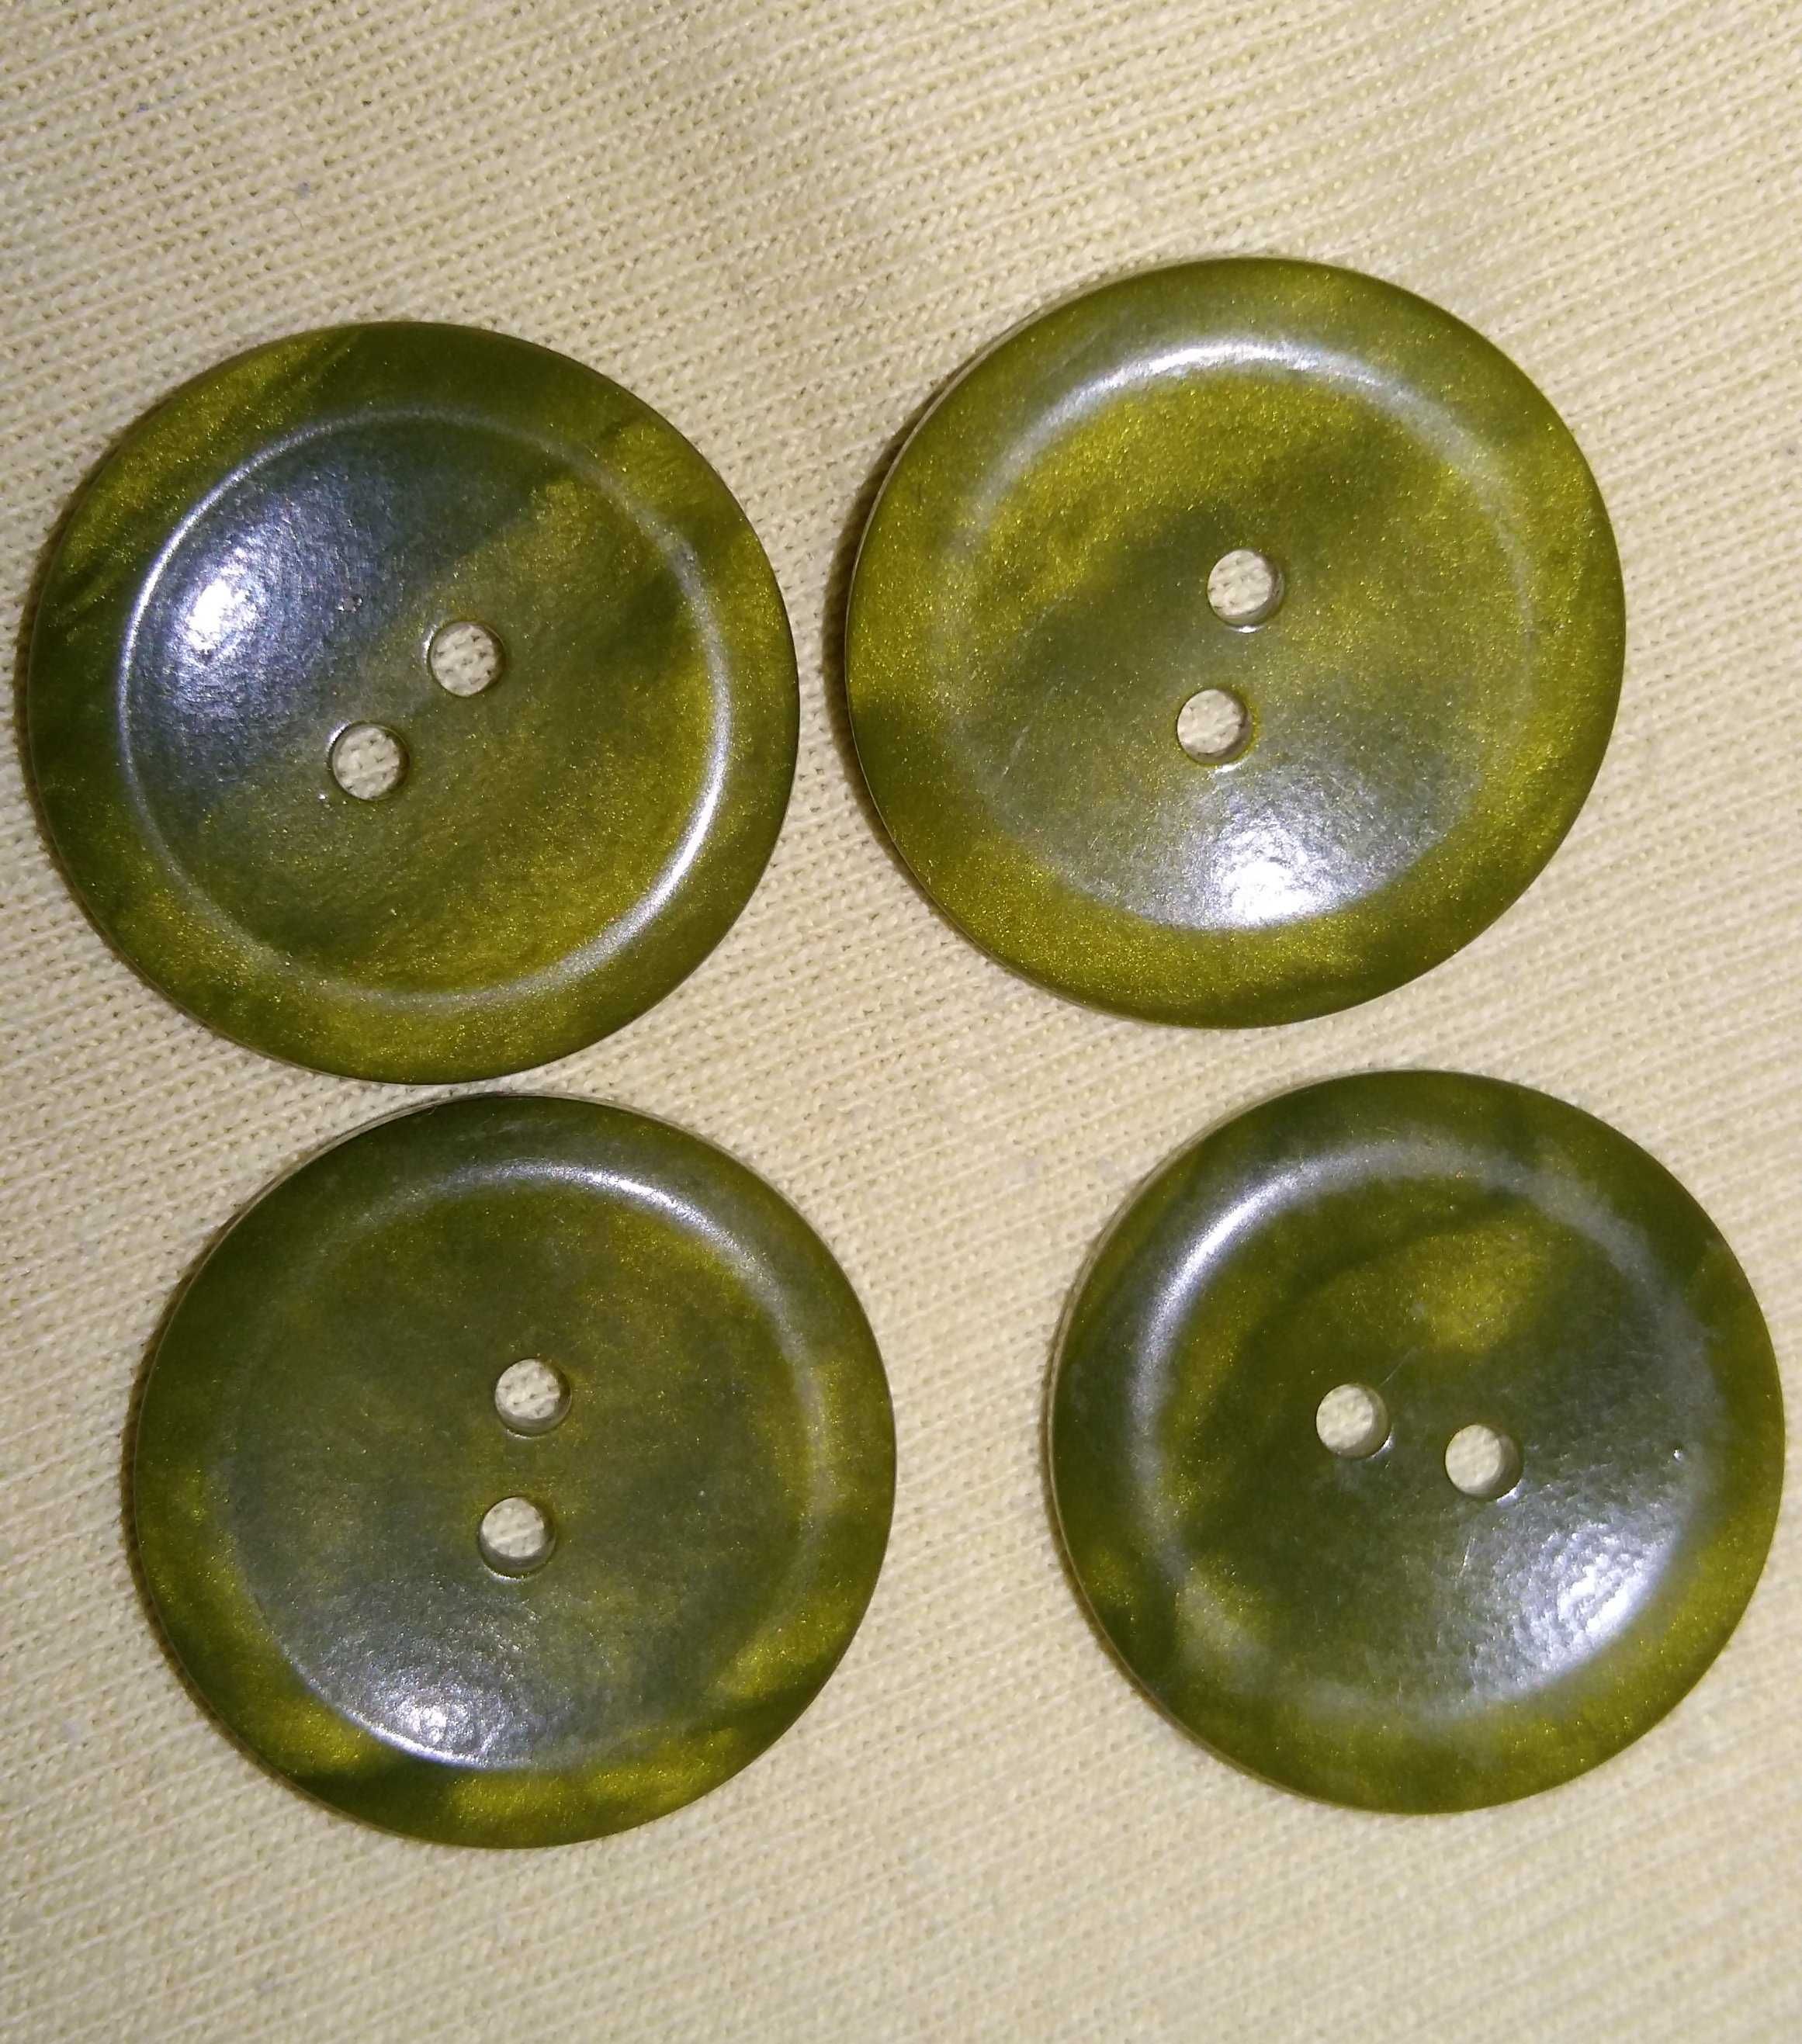 Guziki w oliwkowym kolorze, średnica 2cm.Sztuk 4